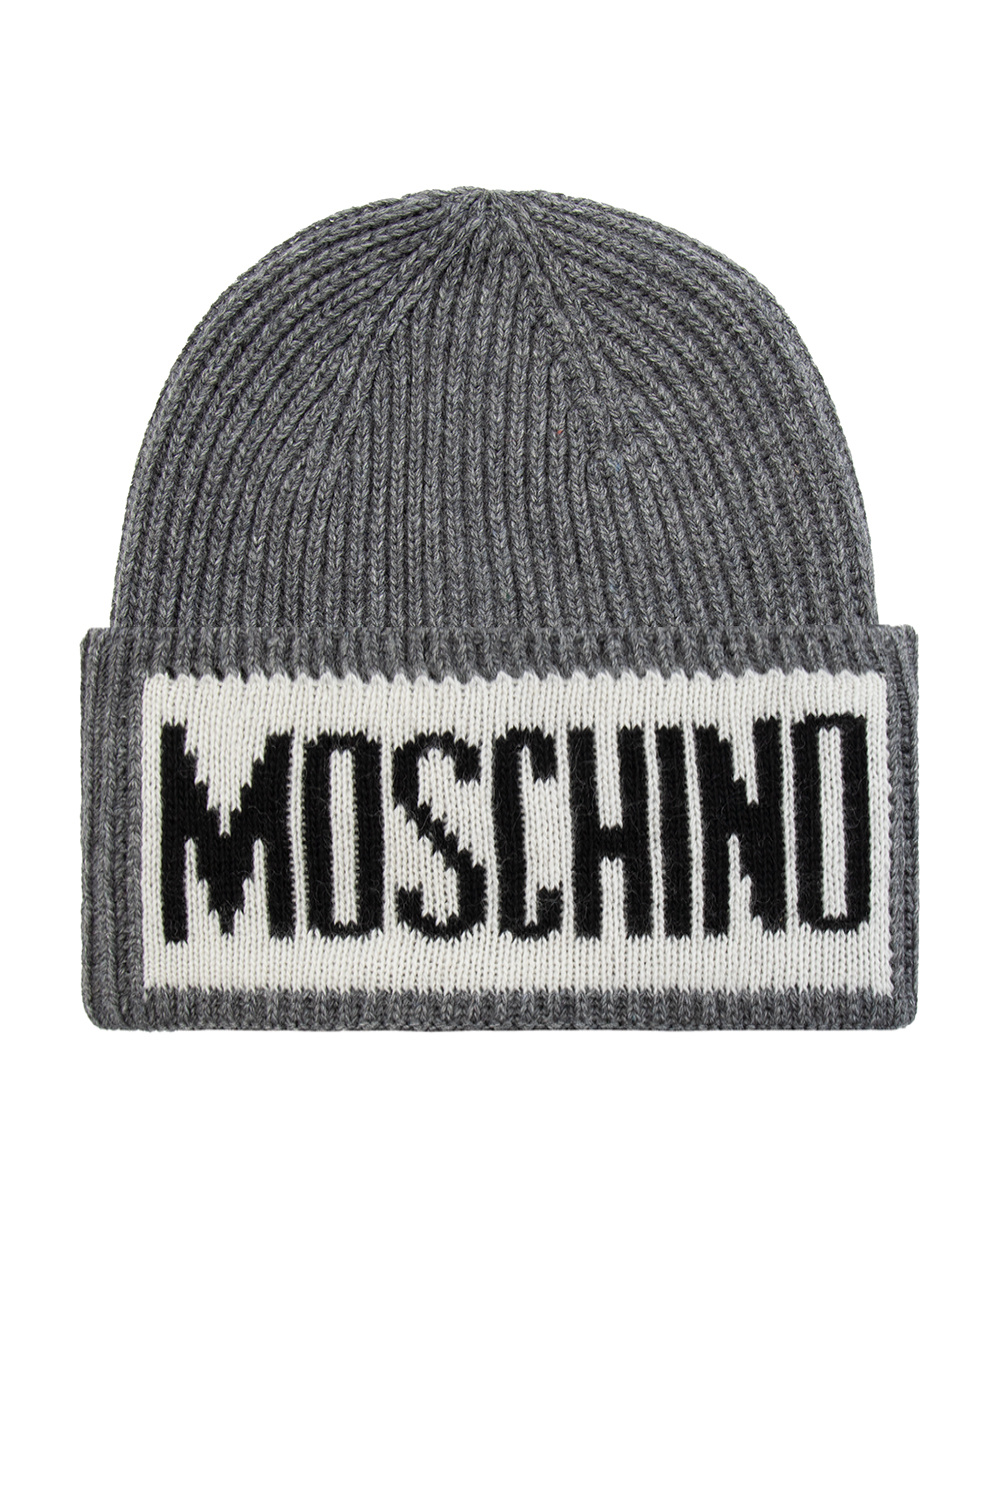 Grey Hat with Canada logo - ERA Baseballkappe mit Louvre Liberte-Print - Moschino Schwarz Le CAP NEW IetpShops